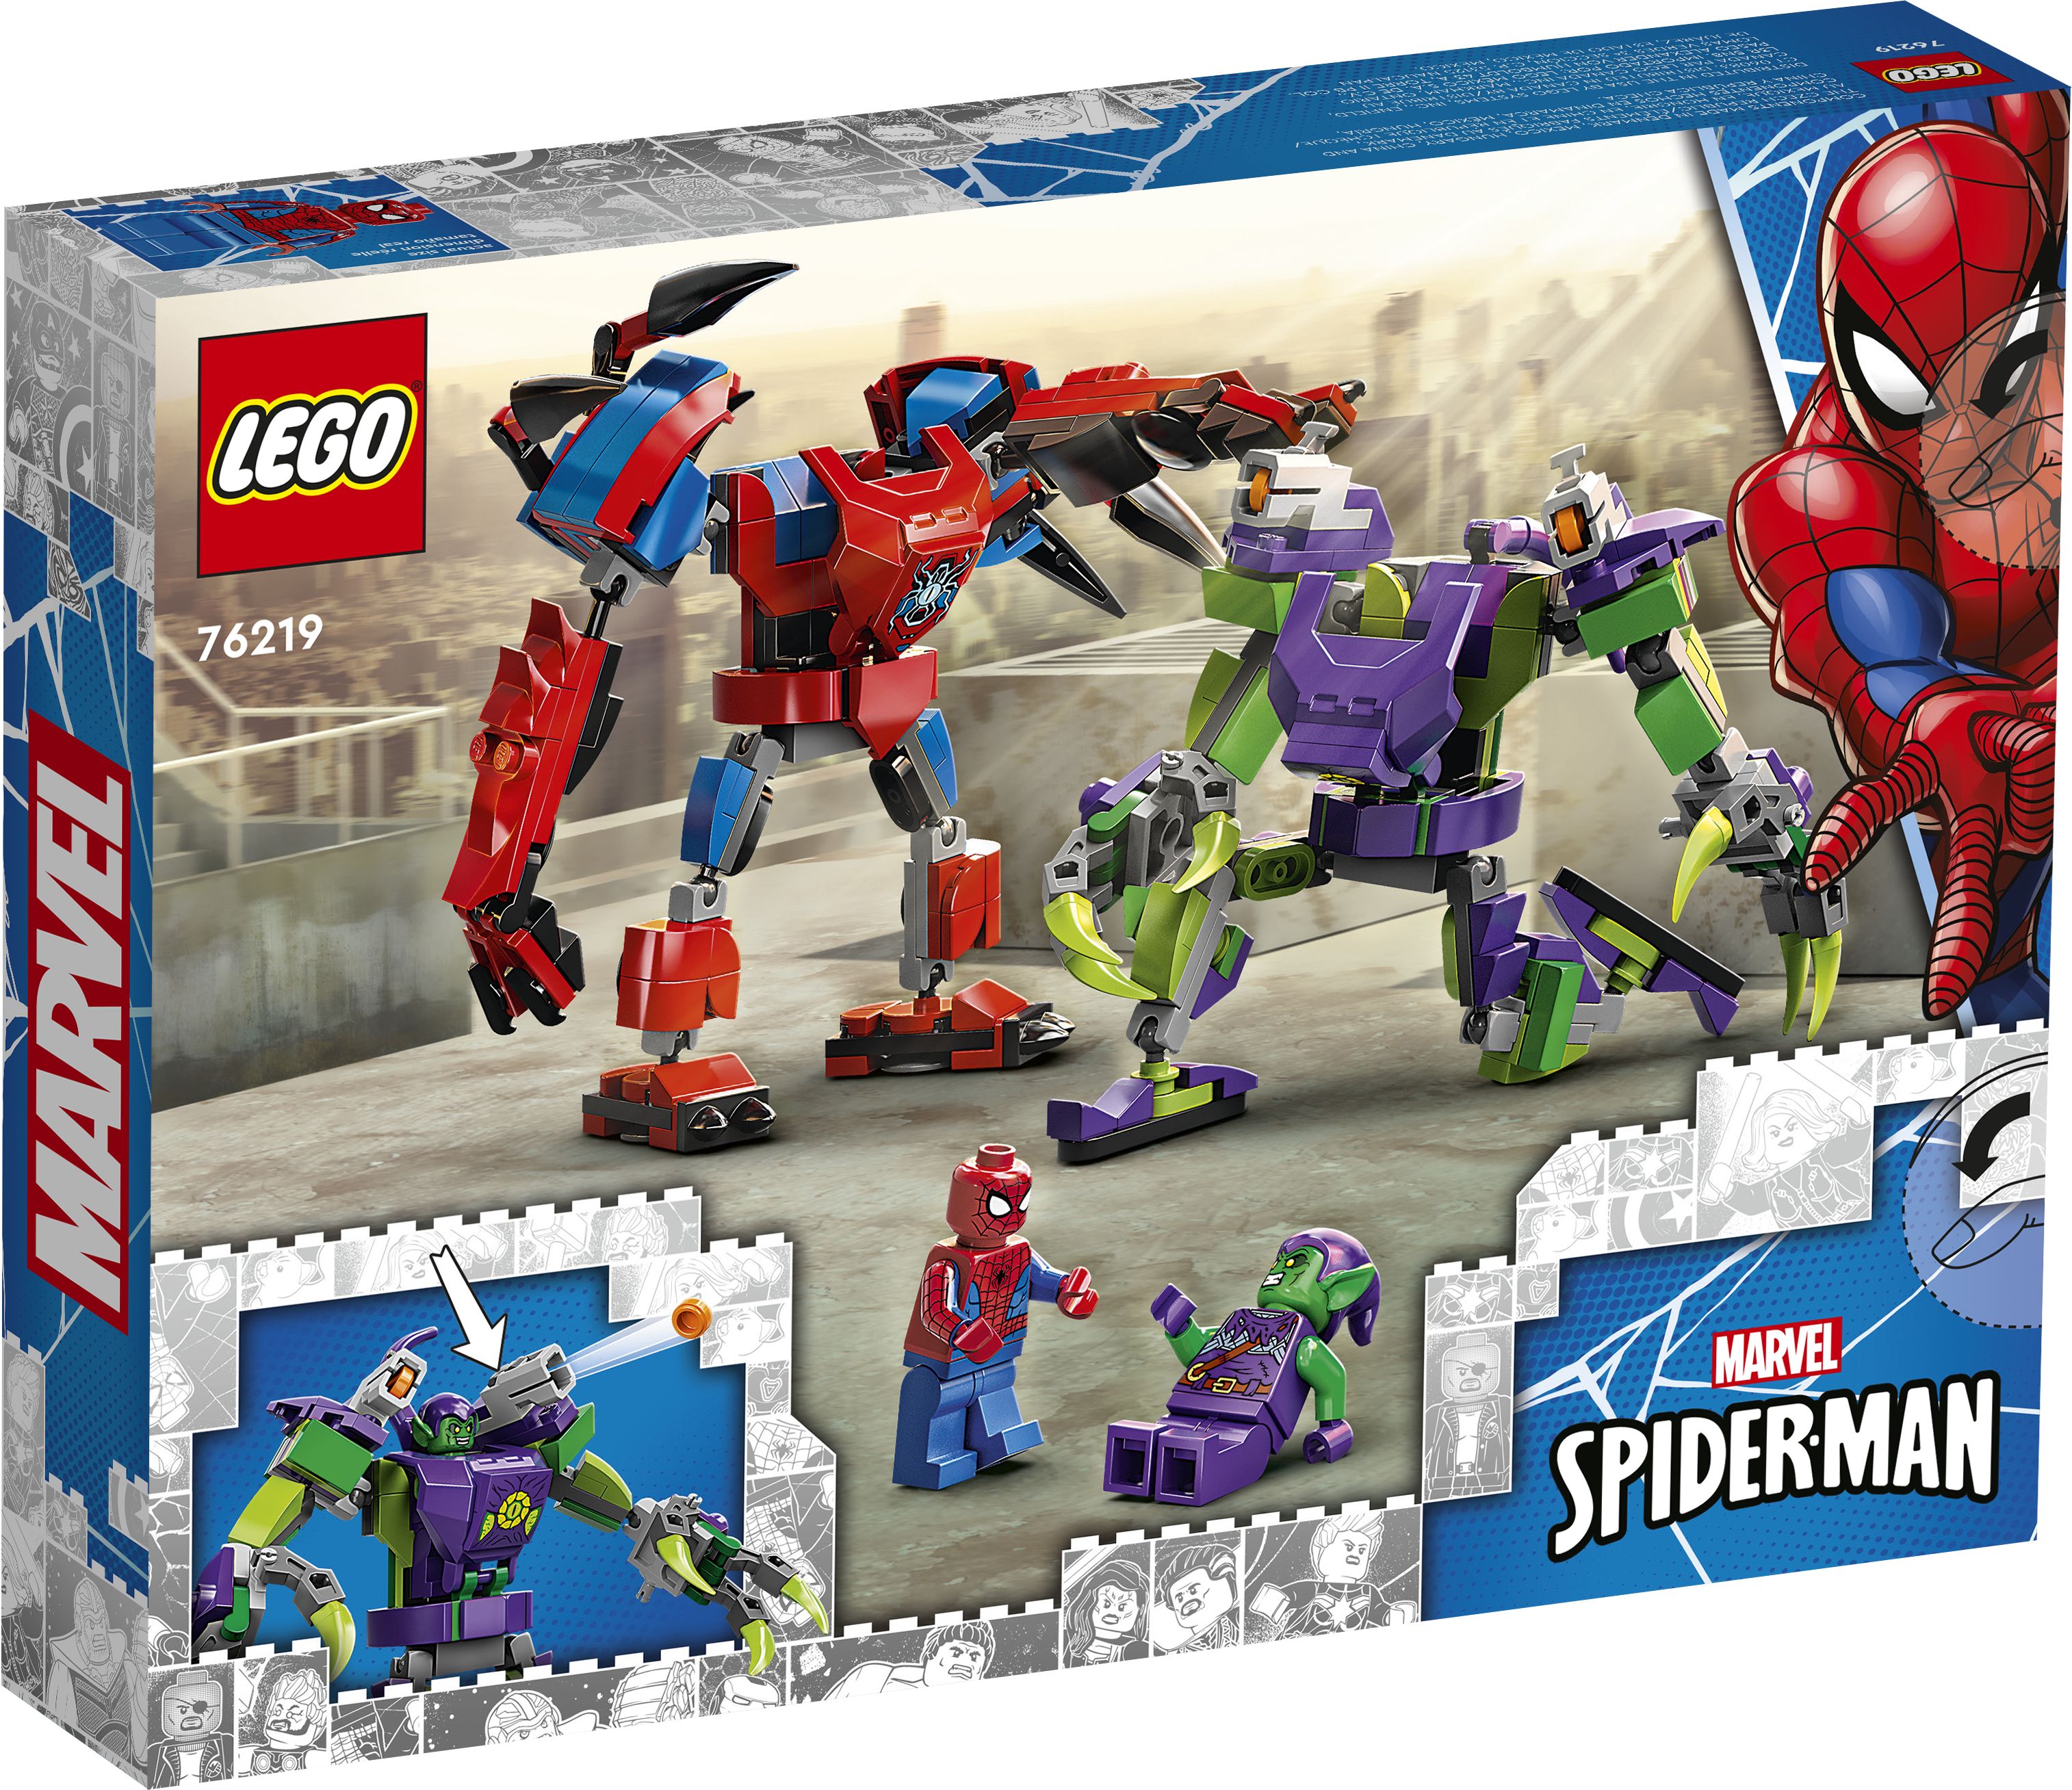 LEGO Super Heroes 76219 Spider-Mans und Green Goblins Mech-Duell LEGO_76219_alt2.jpg